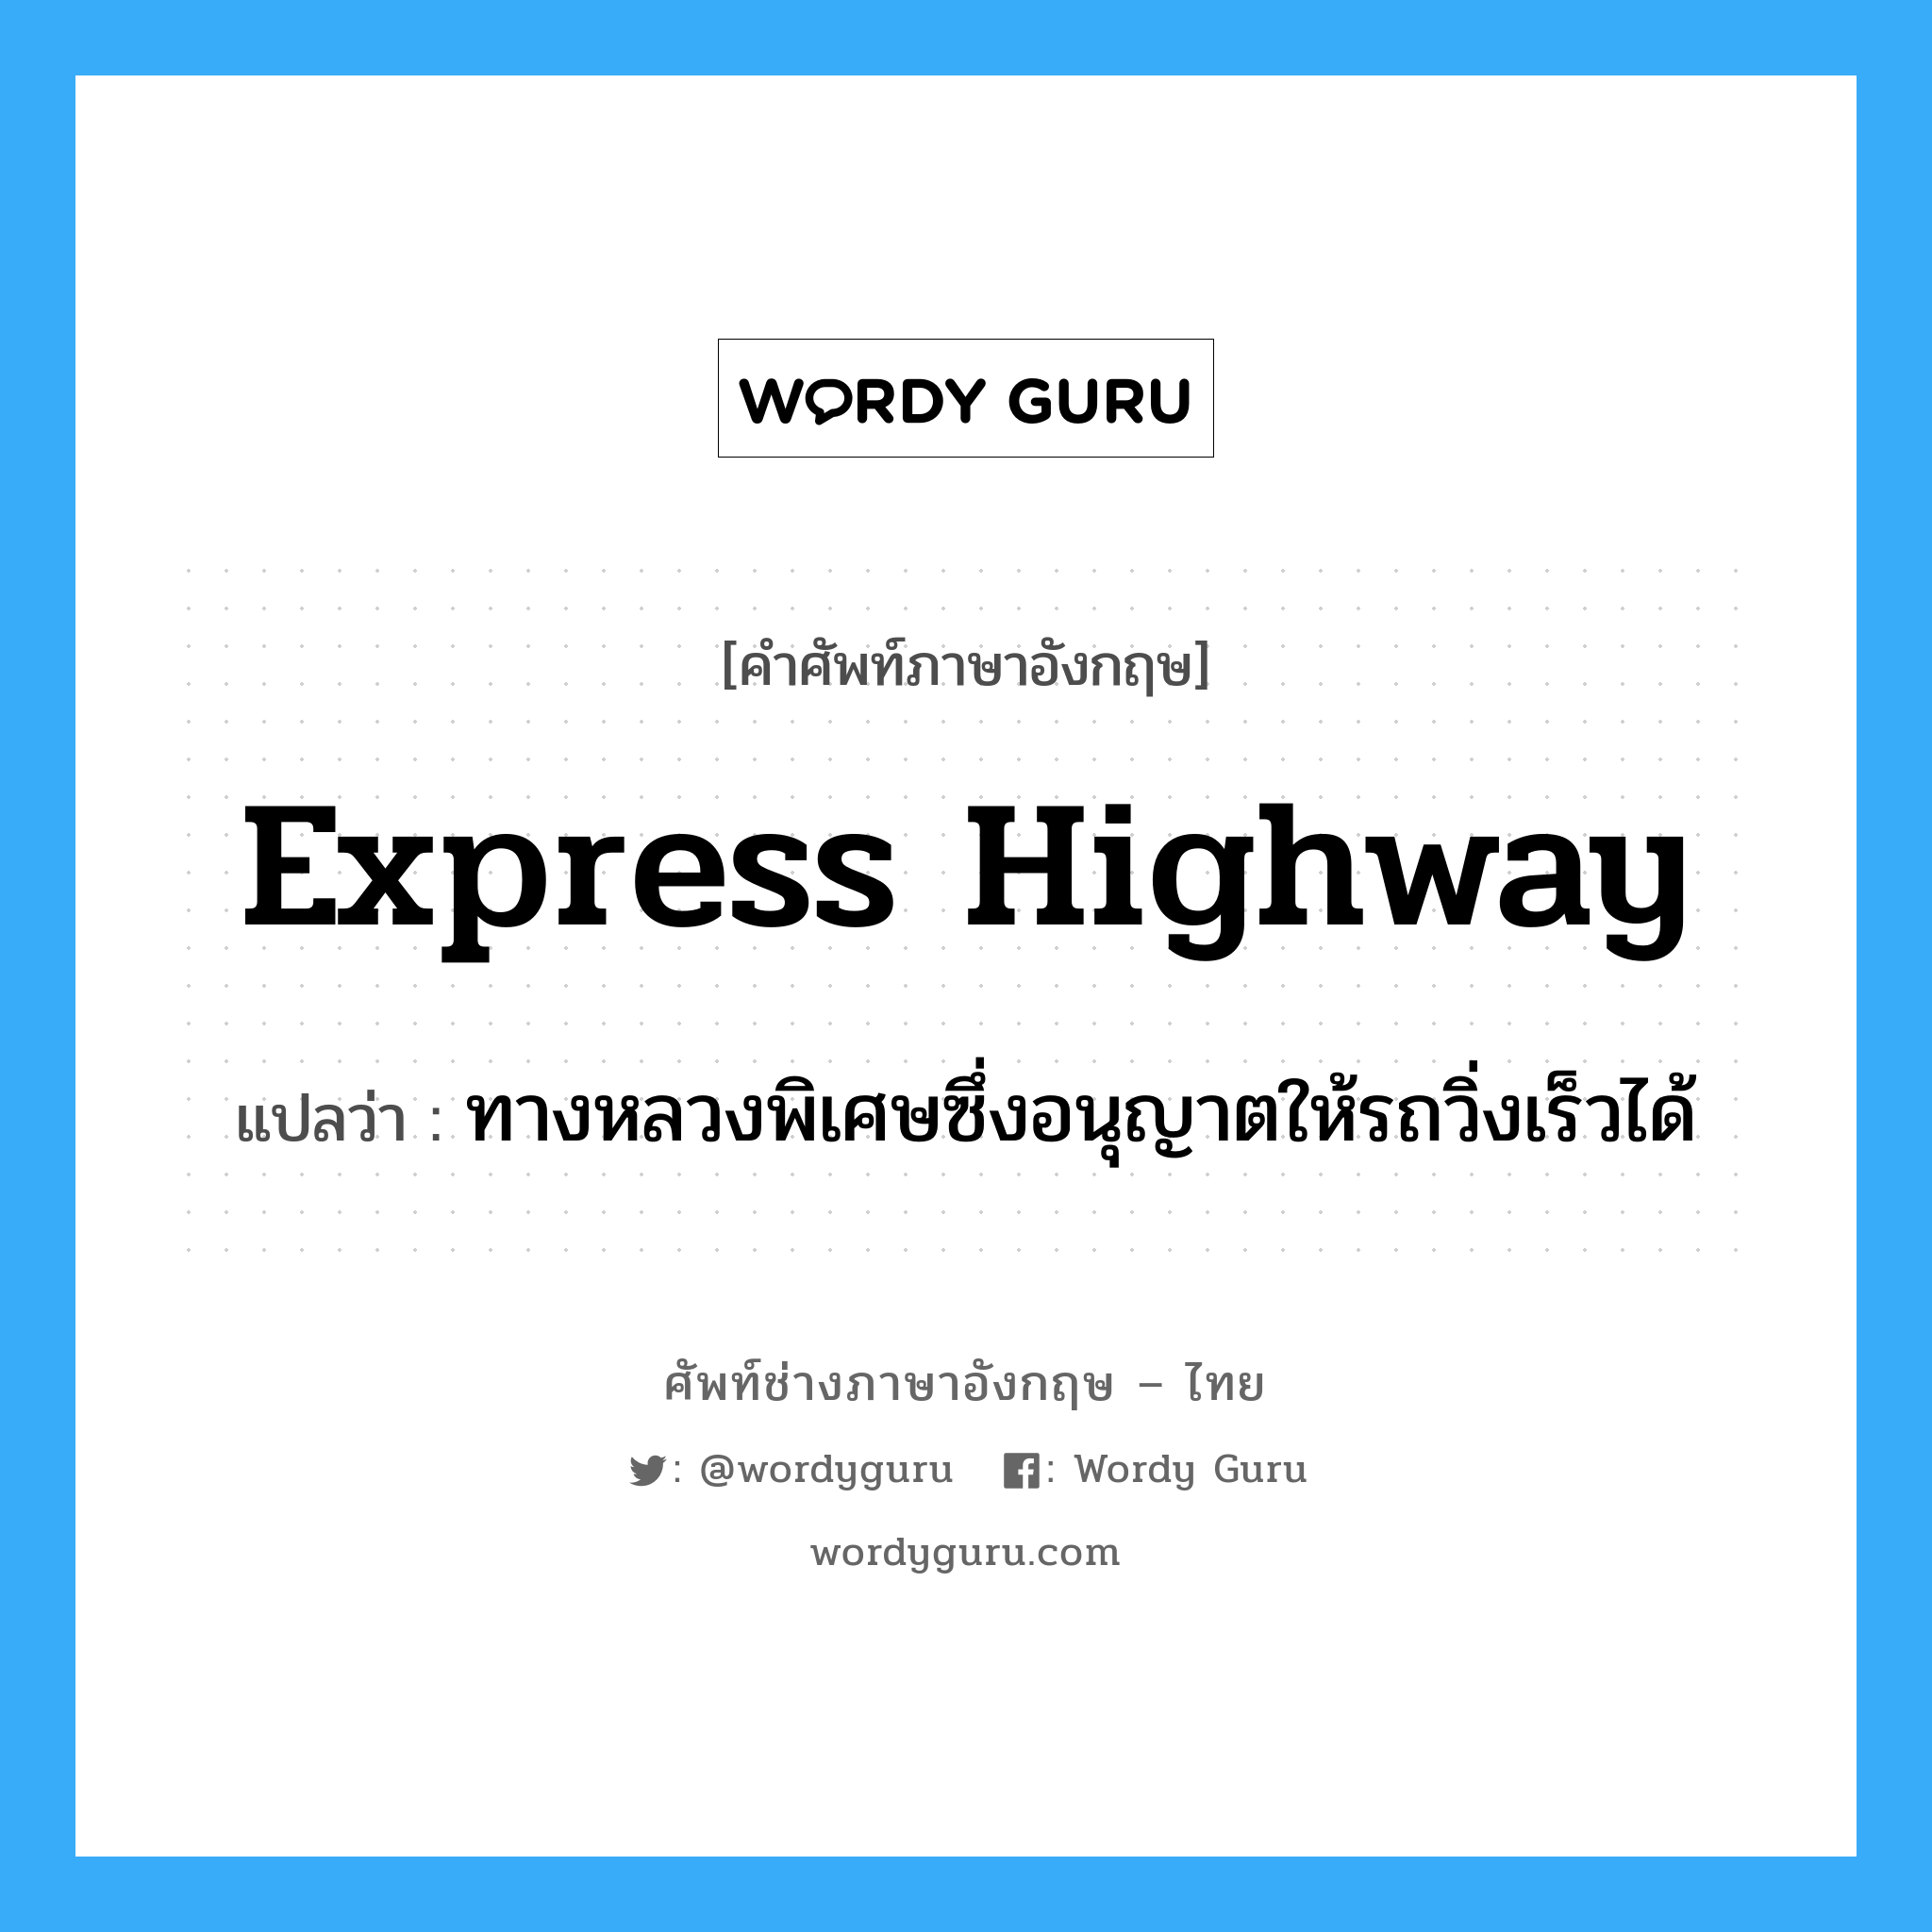 express highway แปลว่า?, คำศัพท์ช่างภาษาอังกฤษ - ไทย express highway คำศัพท์ภาษาอังกฤษ express highway แปลว่า ทางหลวงพิเศษซึ่งอนุญาตให้รถวิ่งเร็วได้